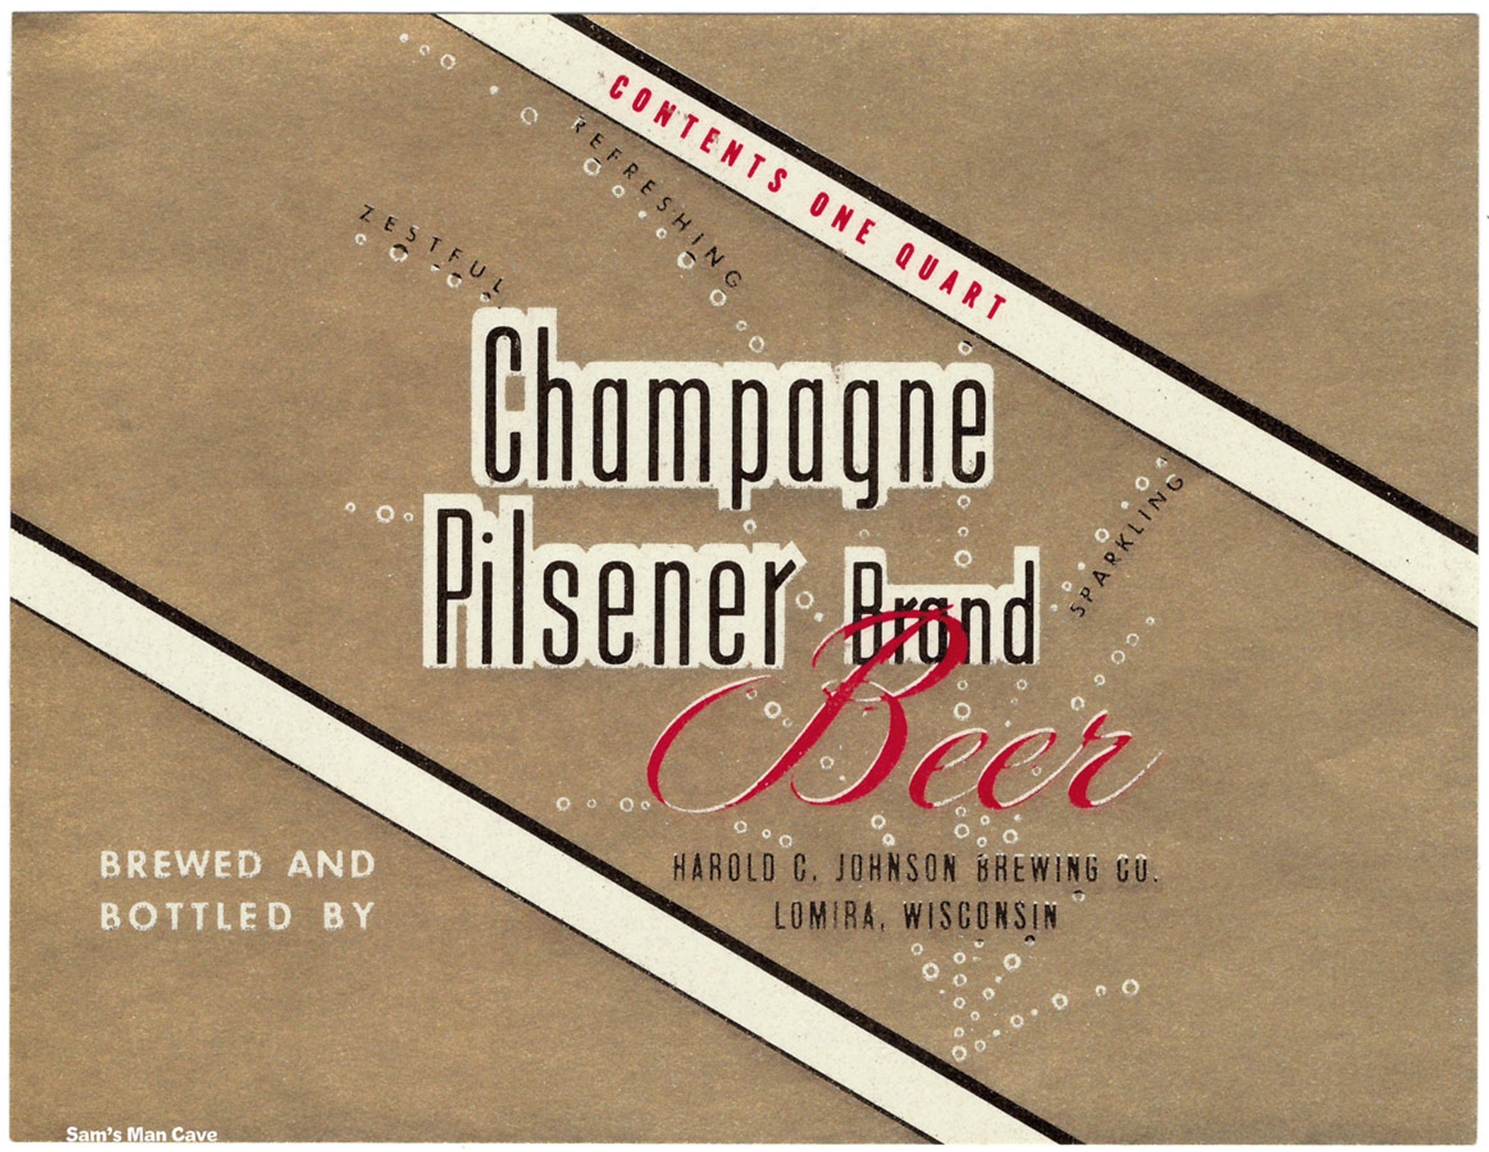 Champagne Pilsener Brand Beer Label